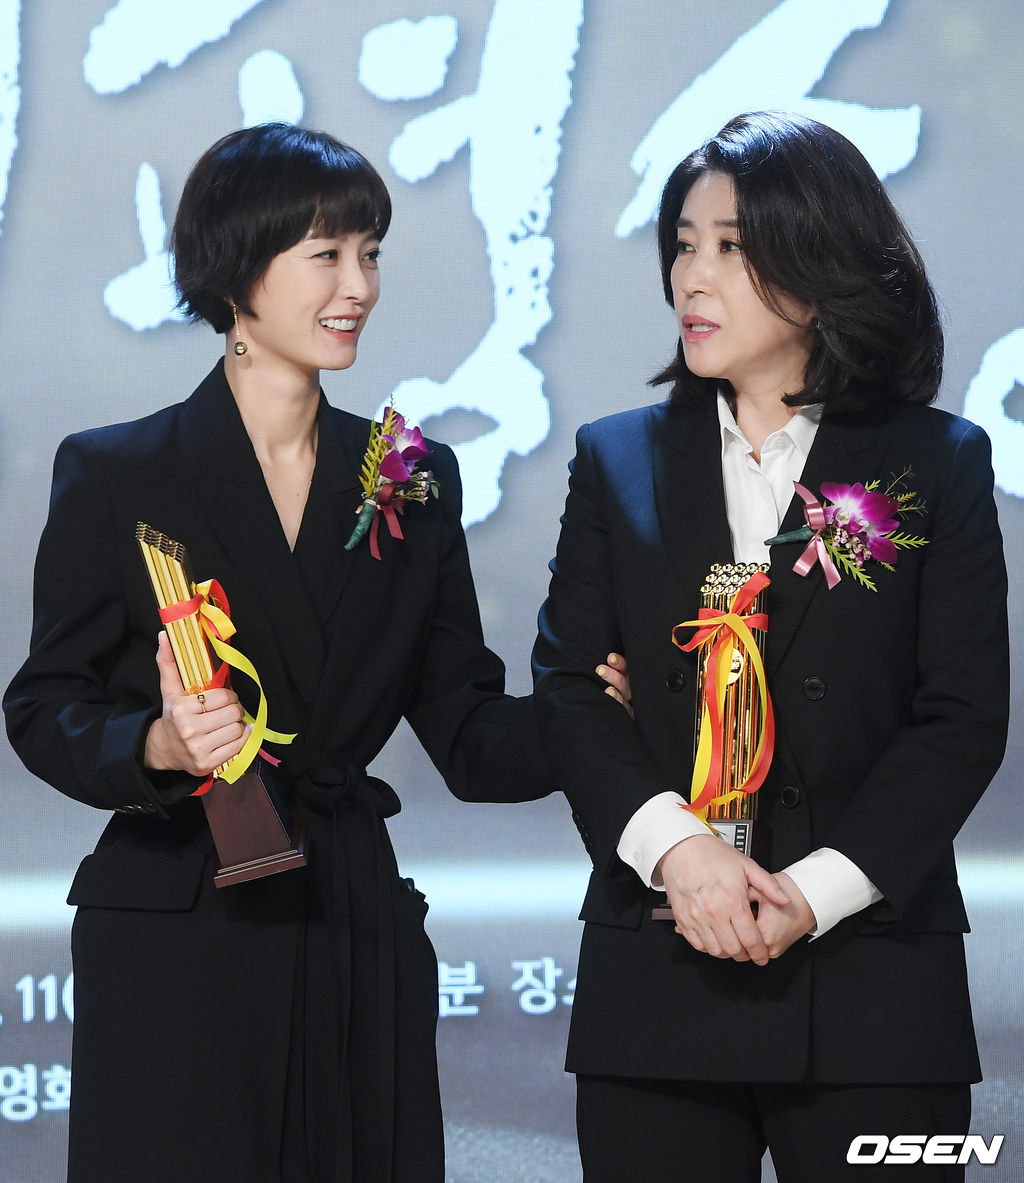 무대 위에서  여우주연상을 수상한 배우 정유미와 여우조연상을 수상한 김미경이 즐겁게 얘기를 나누고 있다. / rumi@osen.co.kr